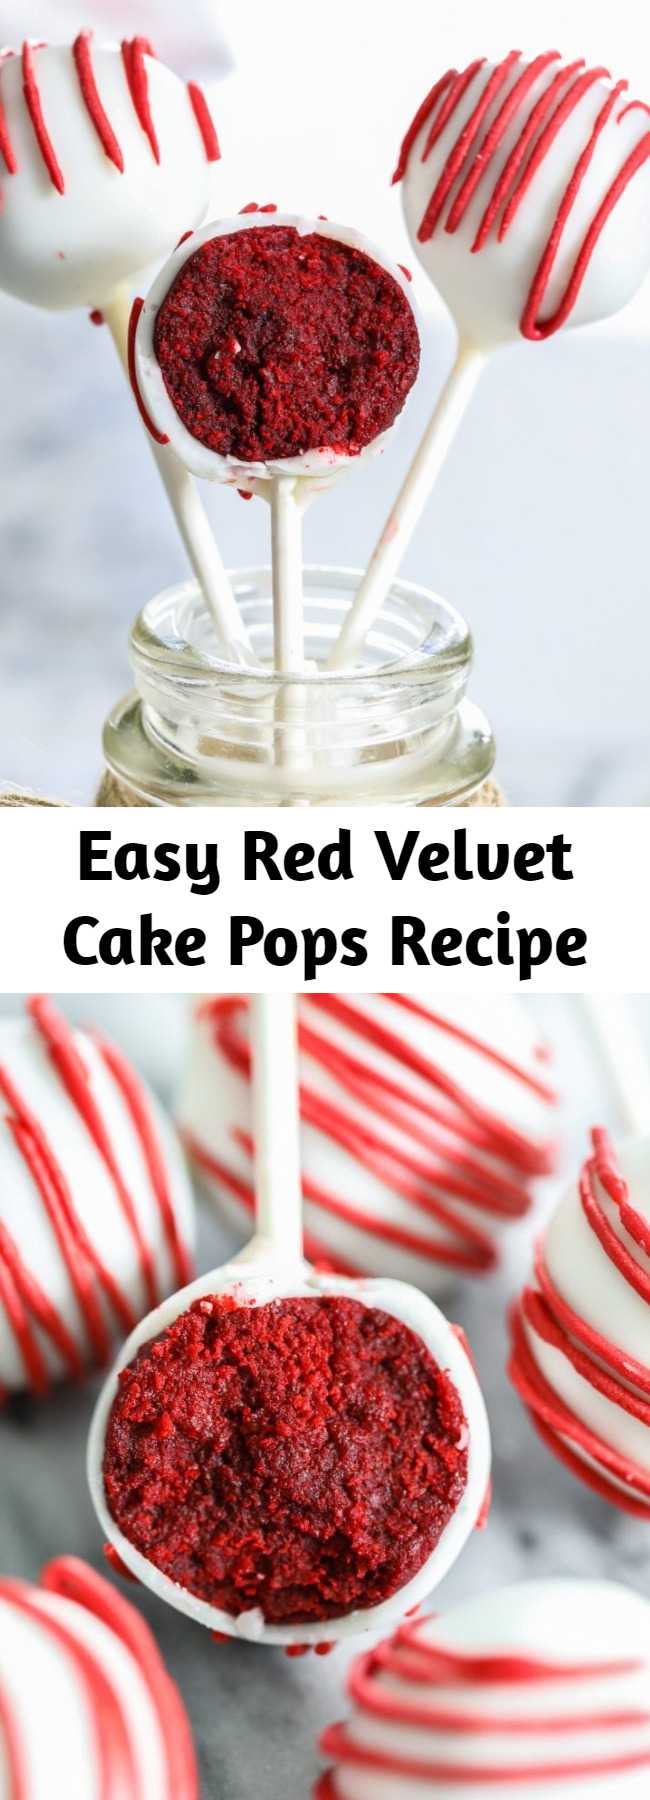 Easy Red Velvet Cake Pops Recipe - The easiest and fuss-free red velvet cake pops recipe! These delicious treats will be the highlight of your next party or celebration! #redvelvet #cakepops #easycakepops #cakepoprecipe #redvelvetcakepops